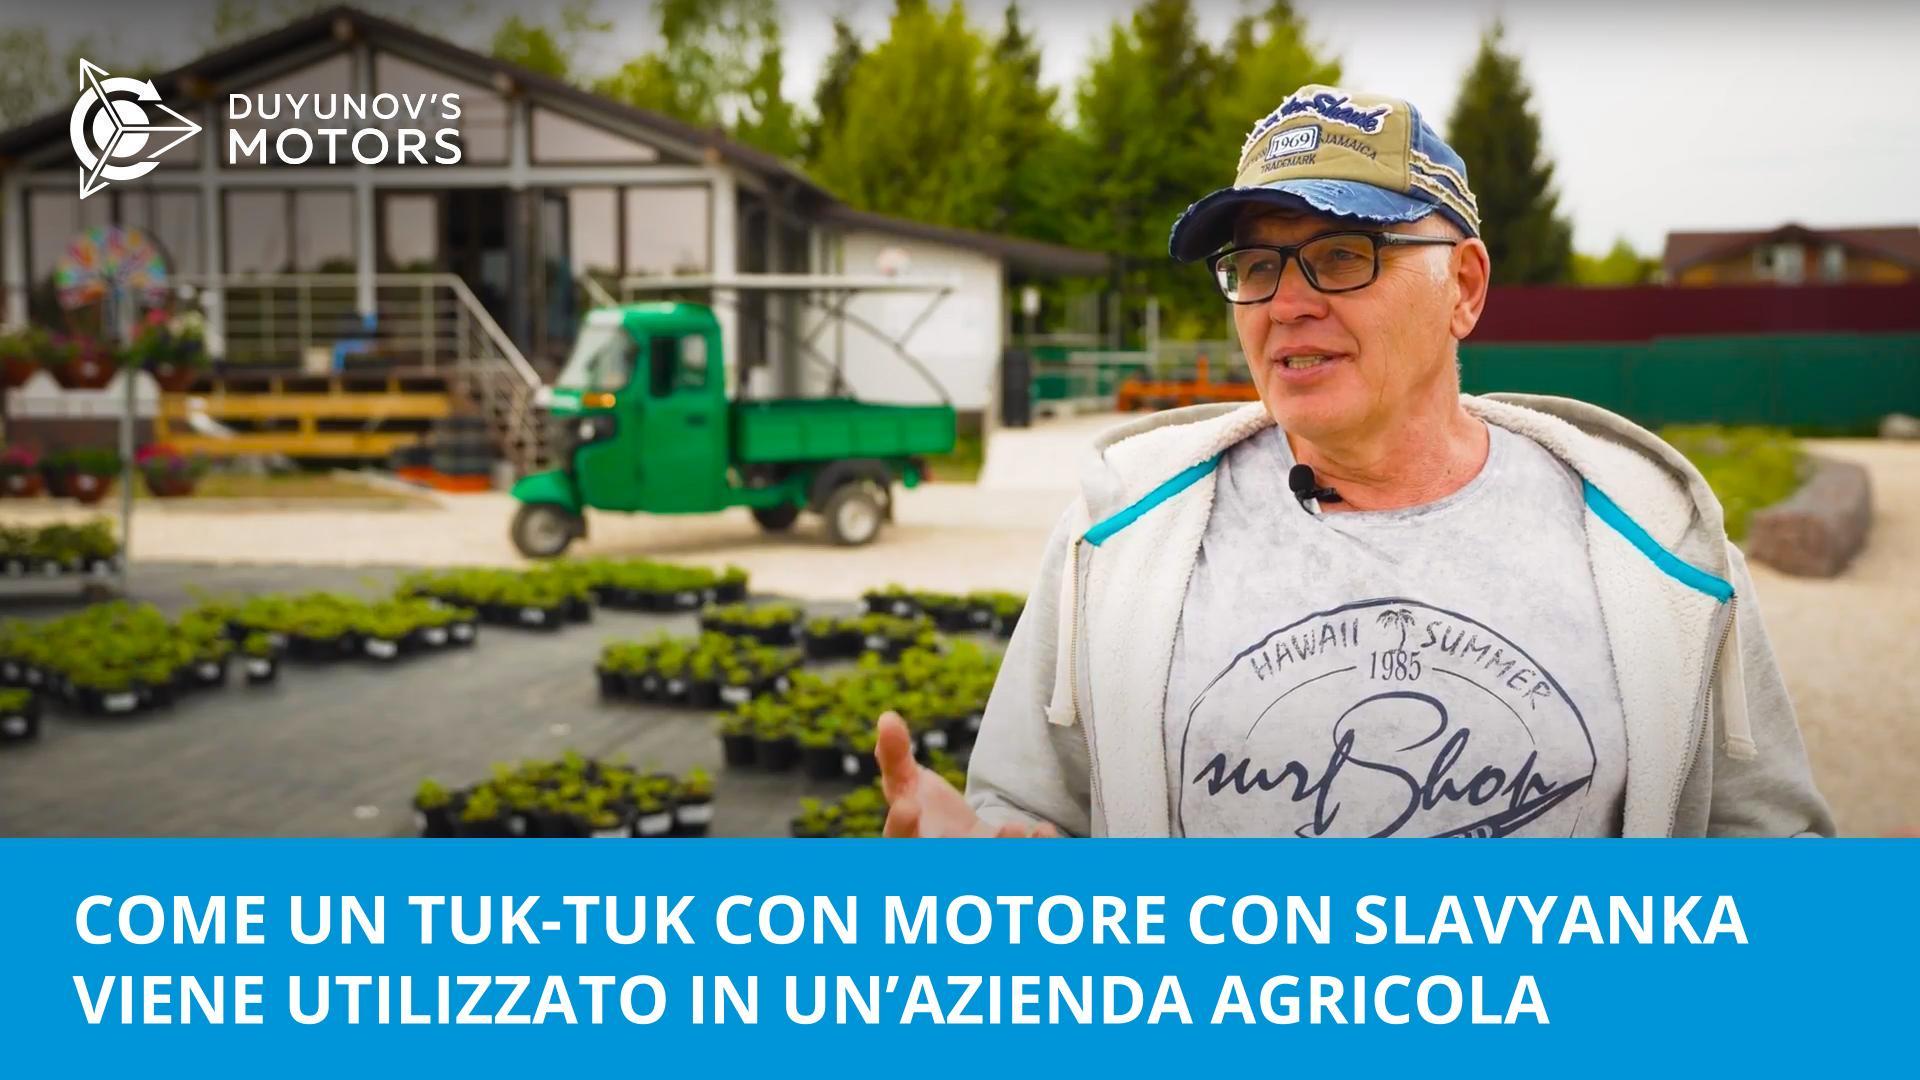 Un aiuto per le imprese green: come viene utilizzato un tuk-tuk con motore a Slavyanka in un'azienda agricola